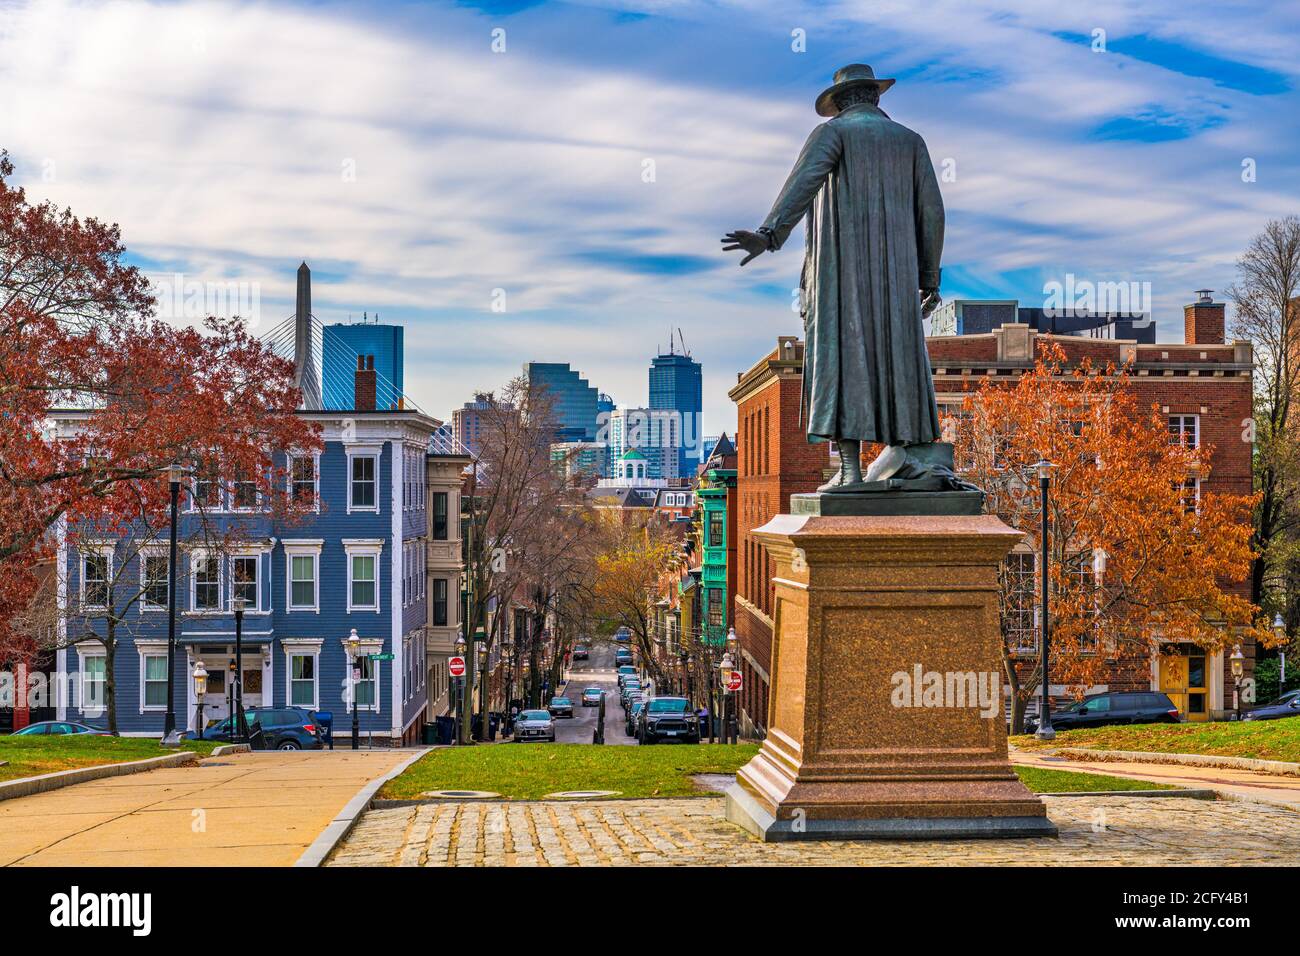 Bunker Hill, Boston, Massachusetts, USA during autumn season. Stock Photo